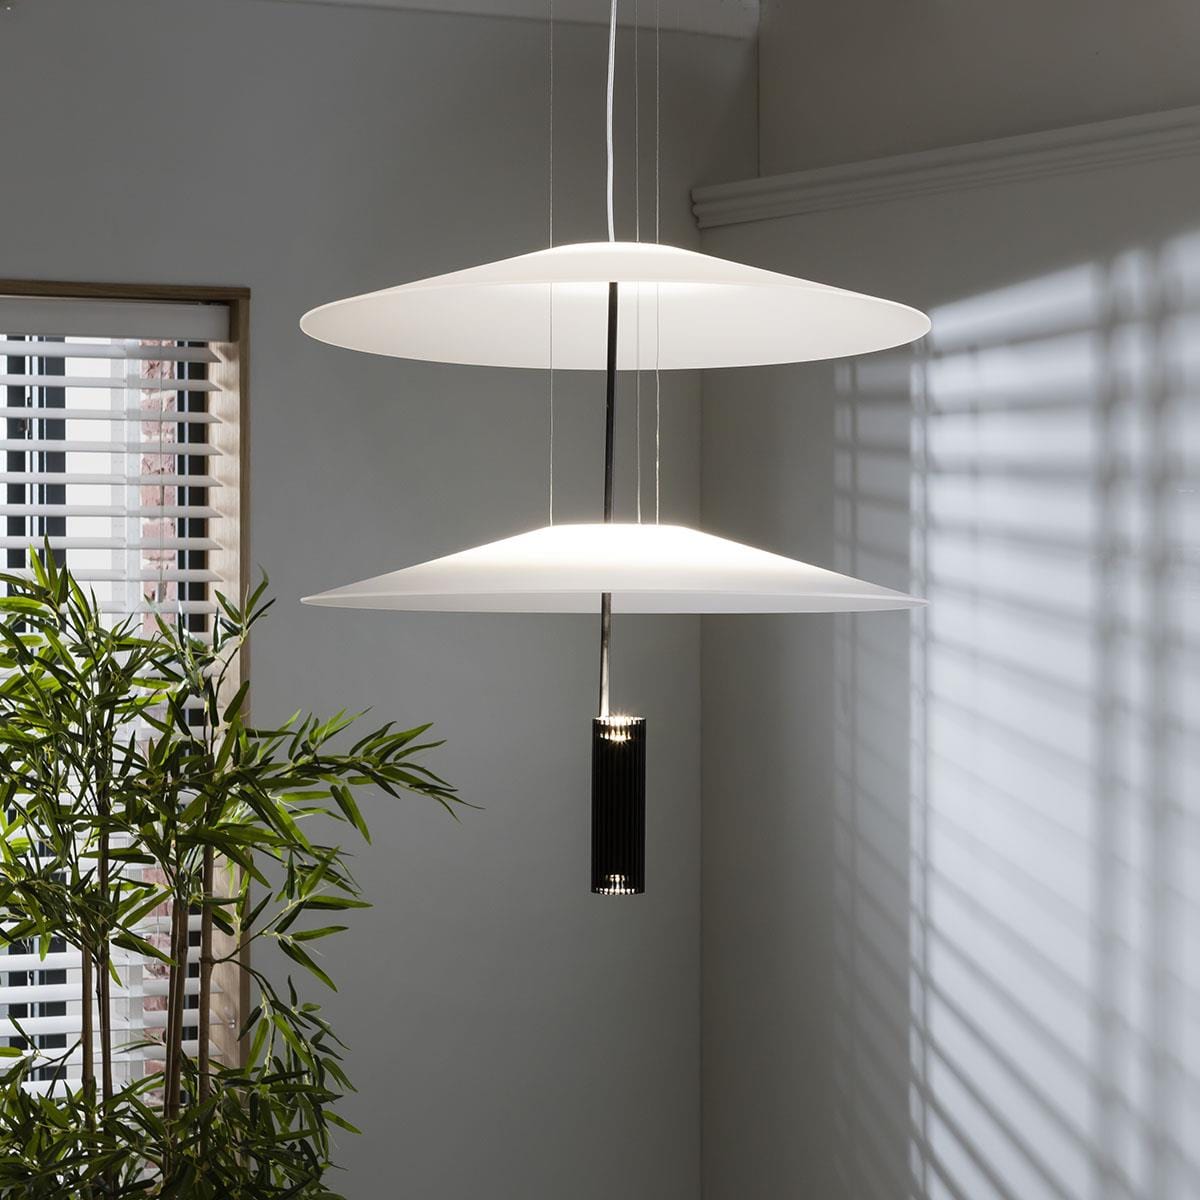 Quatropi Luxury Retro-Inspired Ceiling Light - White & Black Pendant 50cm